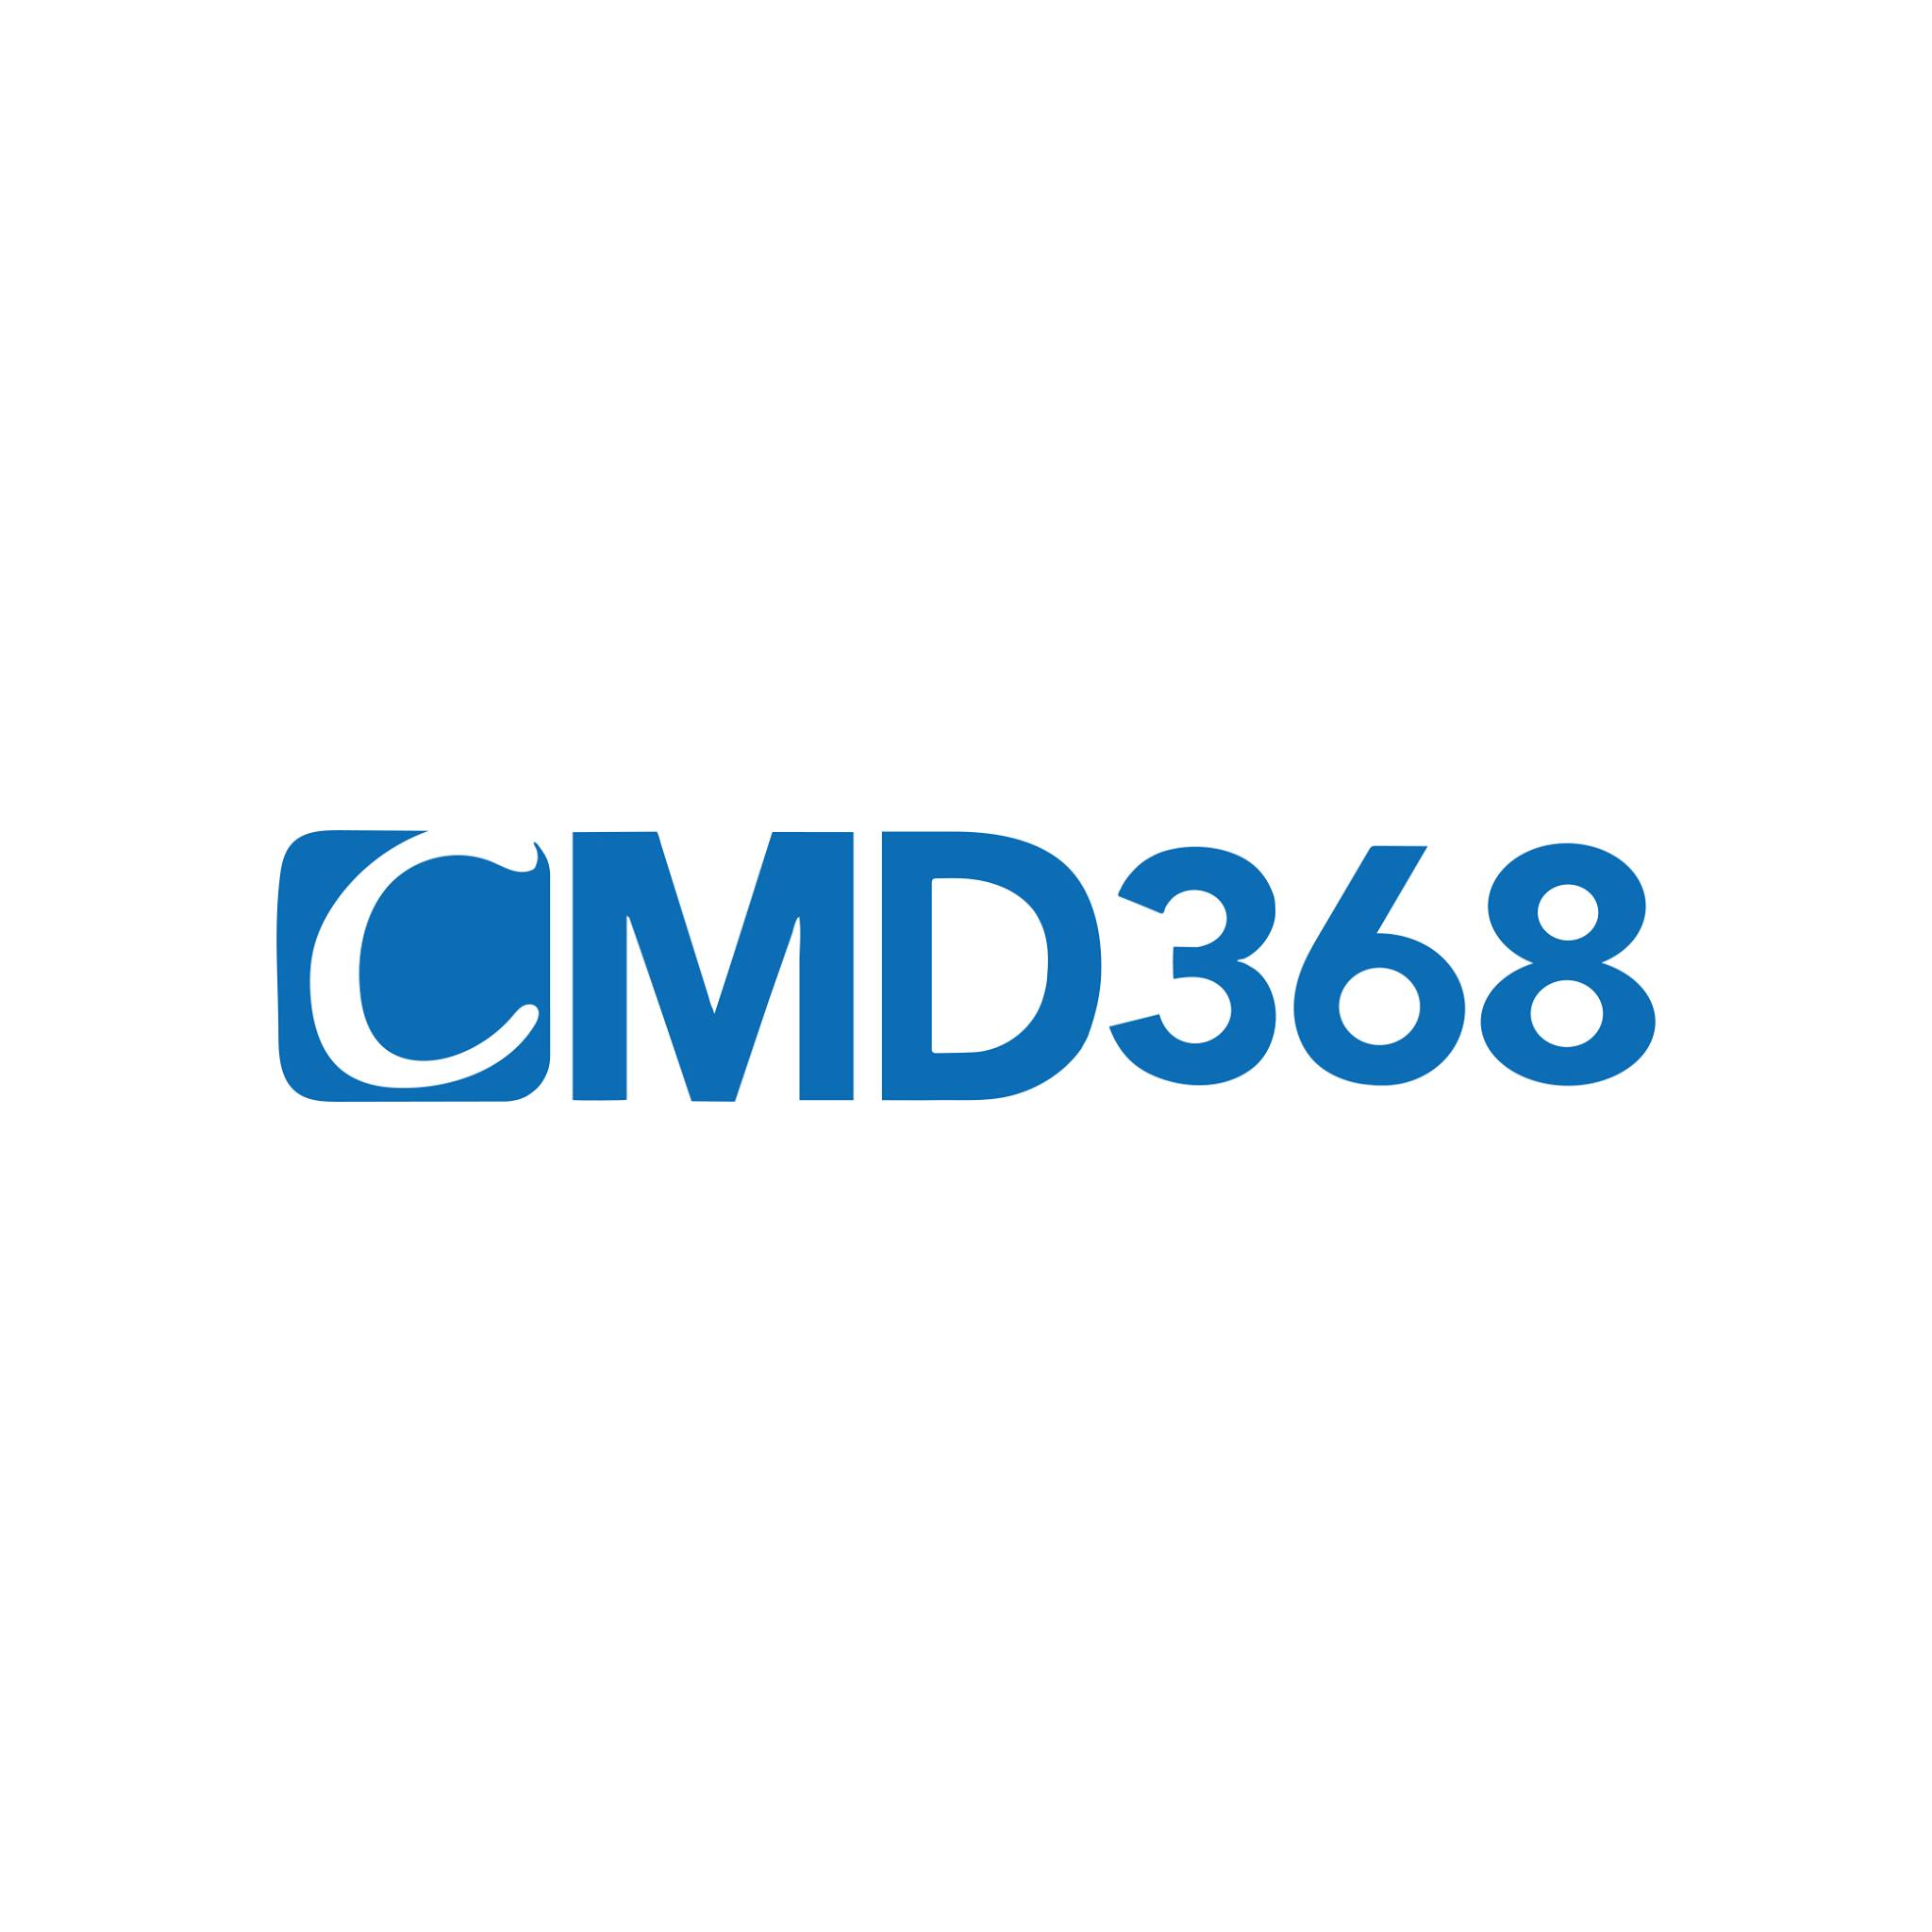 CMD368 – Sân chơi cá cược thể thao đỉnh cao 2021